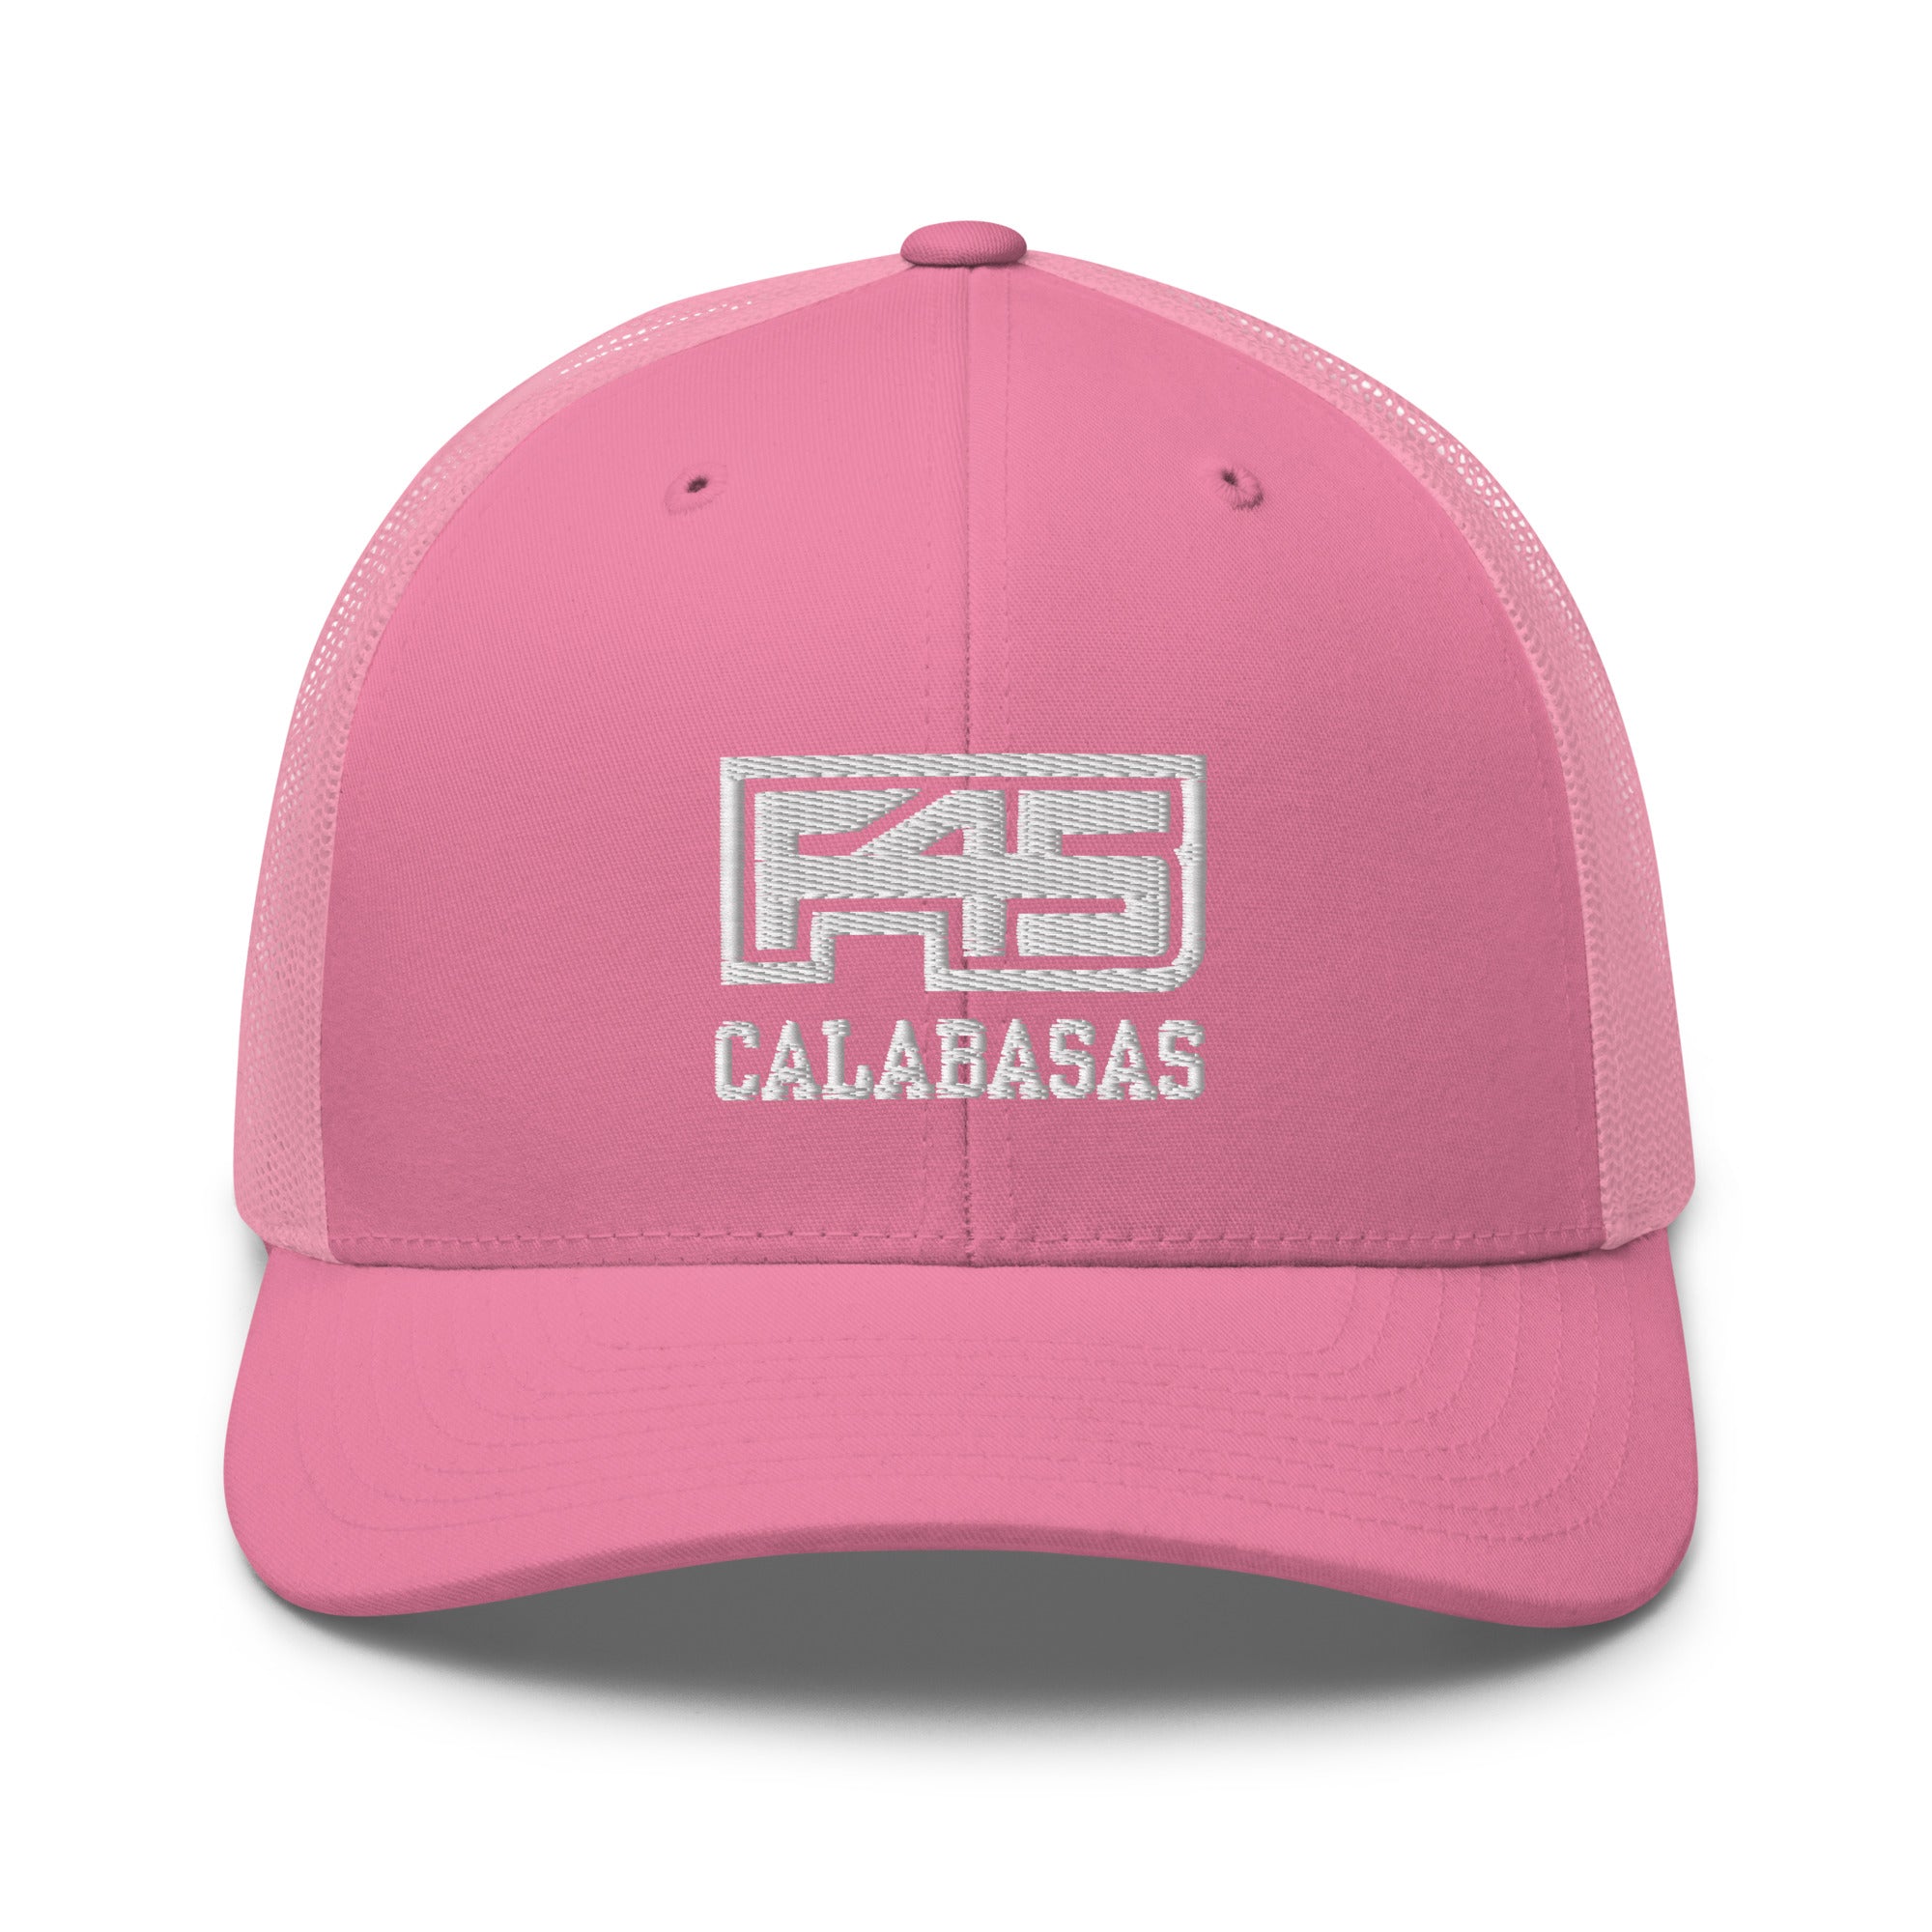 F45 Calabasas Trucker Hat